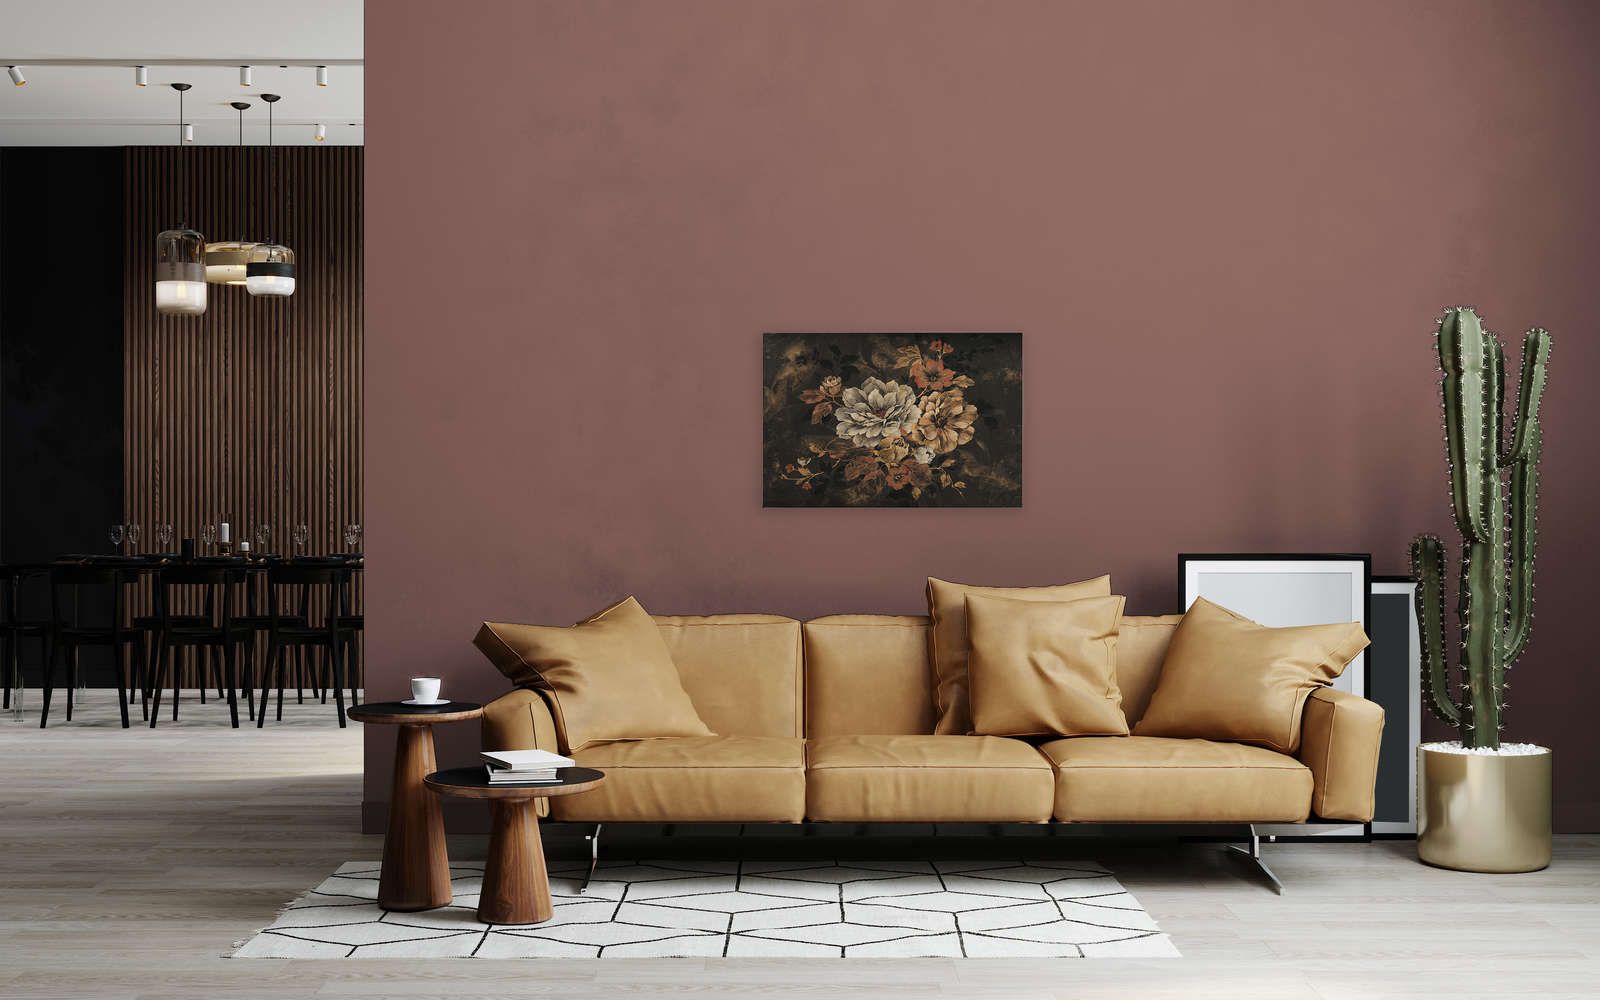             Cuadro en lienzo Diseño floral, pintura al óleo de aspecto vintage - 0,90 m x 0,60 m
        